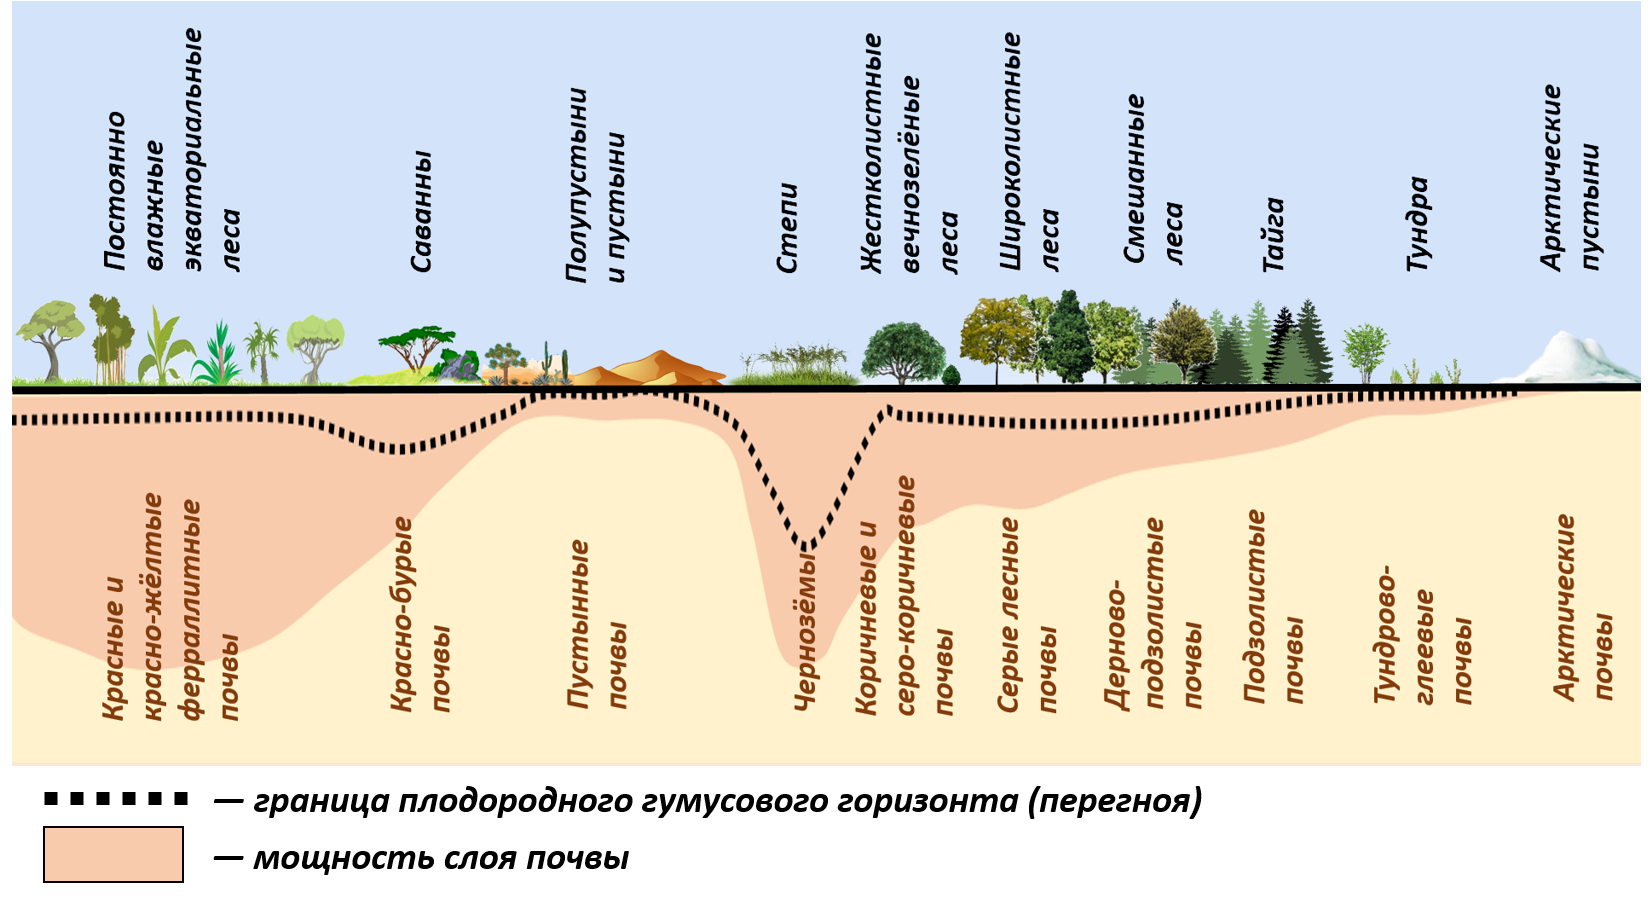 Ковид зоне. Почвы природных зон. Распределение почв по природным зонам. Зональное распределение почв. Основные зональные типы почв России.